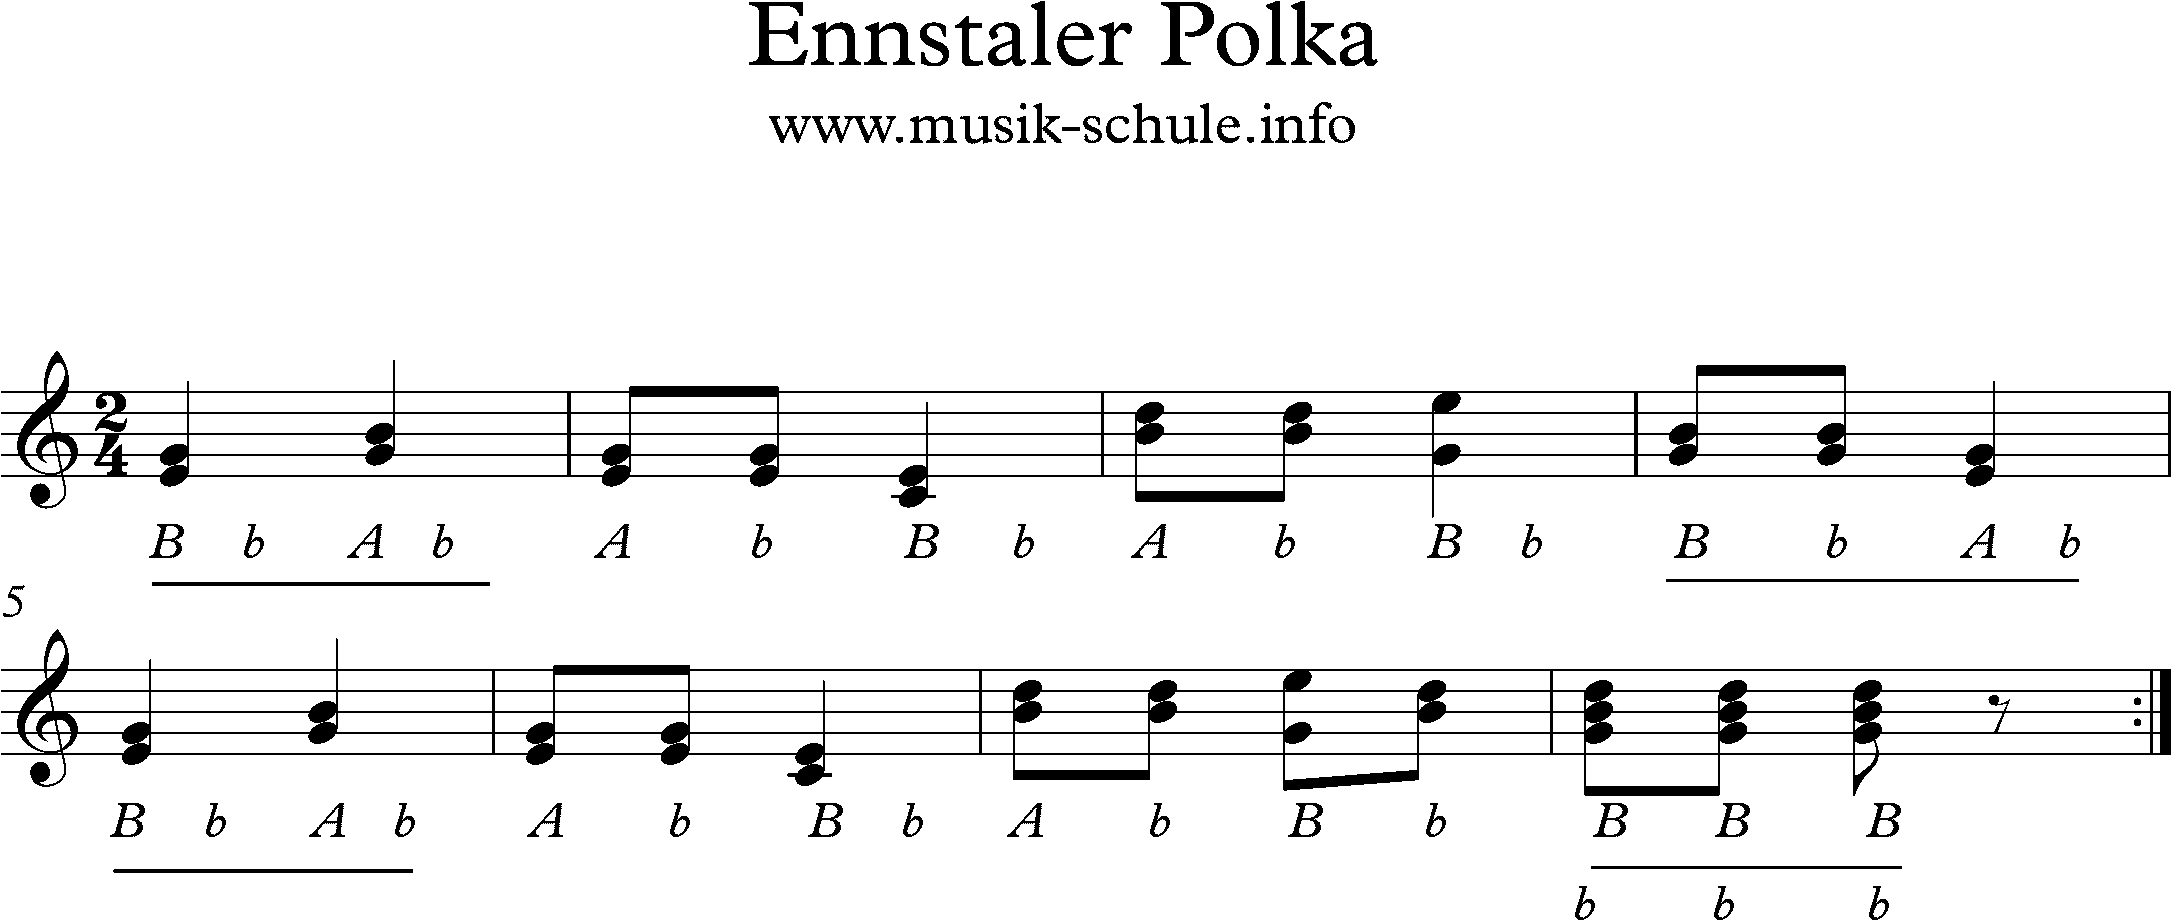 Griffschrift für Steirische, Knopfharmonika